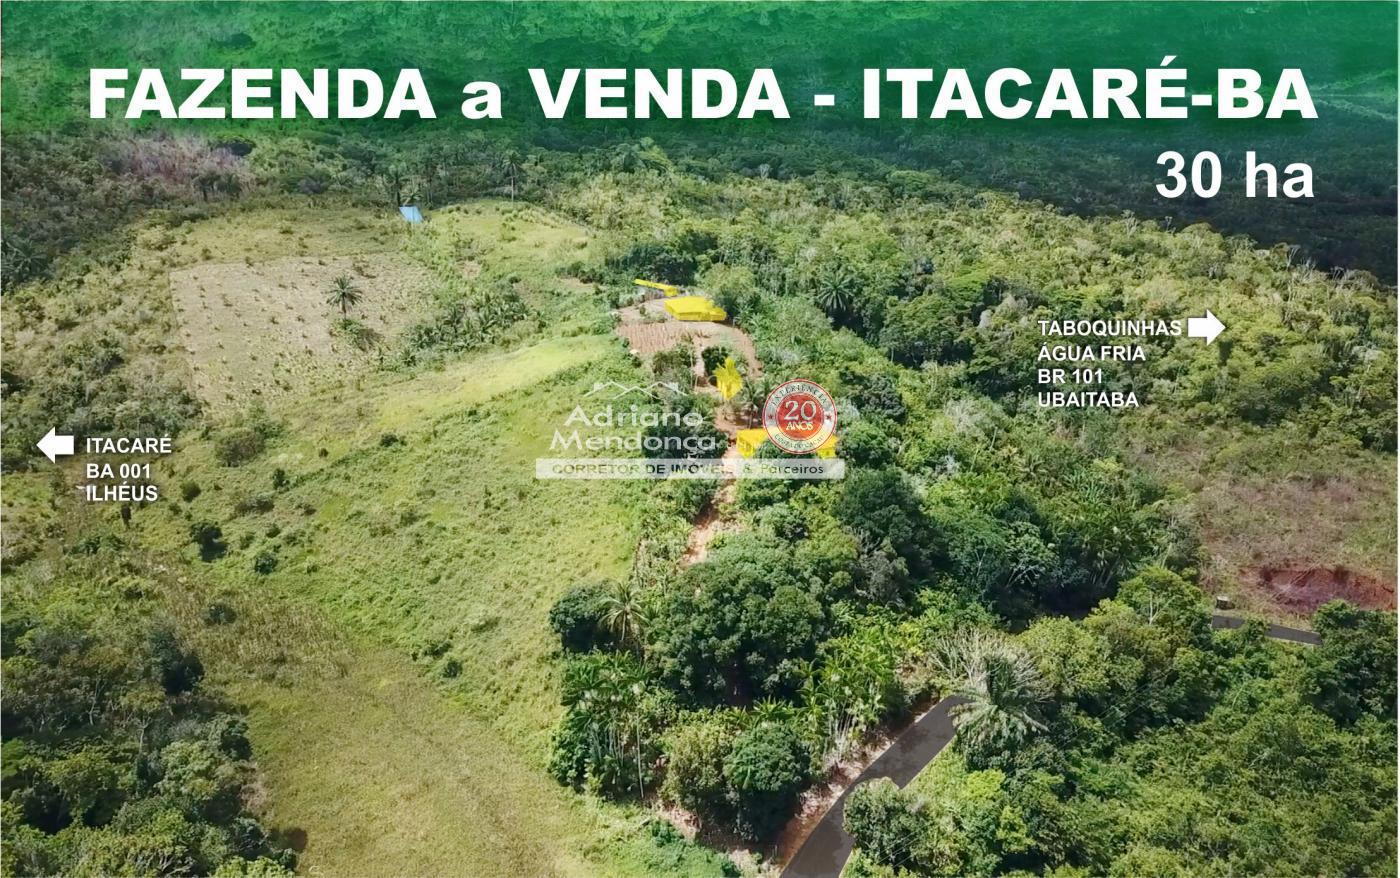 Fazenda cacau a venda Itacar Bahia